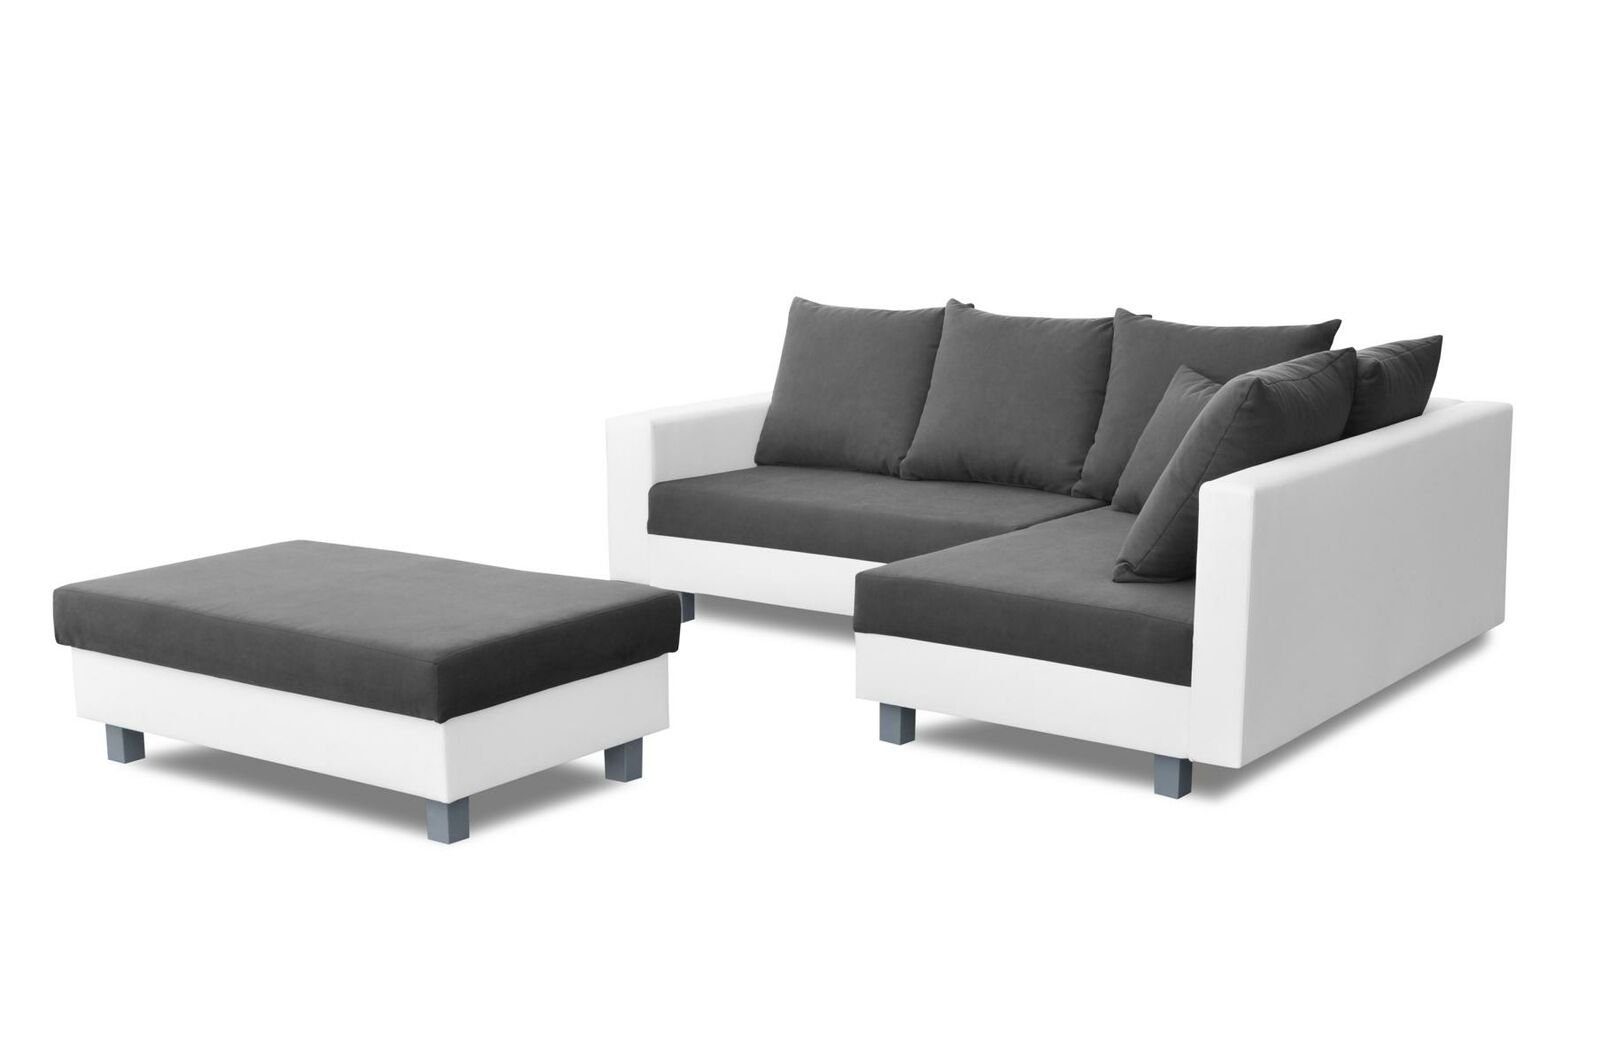 JVmoebel Luxus Sofa Made Couch Europe Weiße in Neu, Sofa L-Form Wohnladschaft Textilmöbel